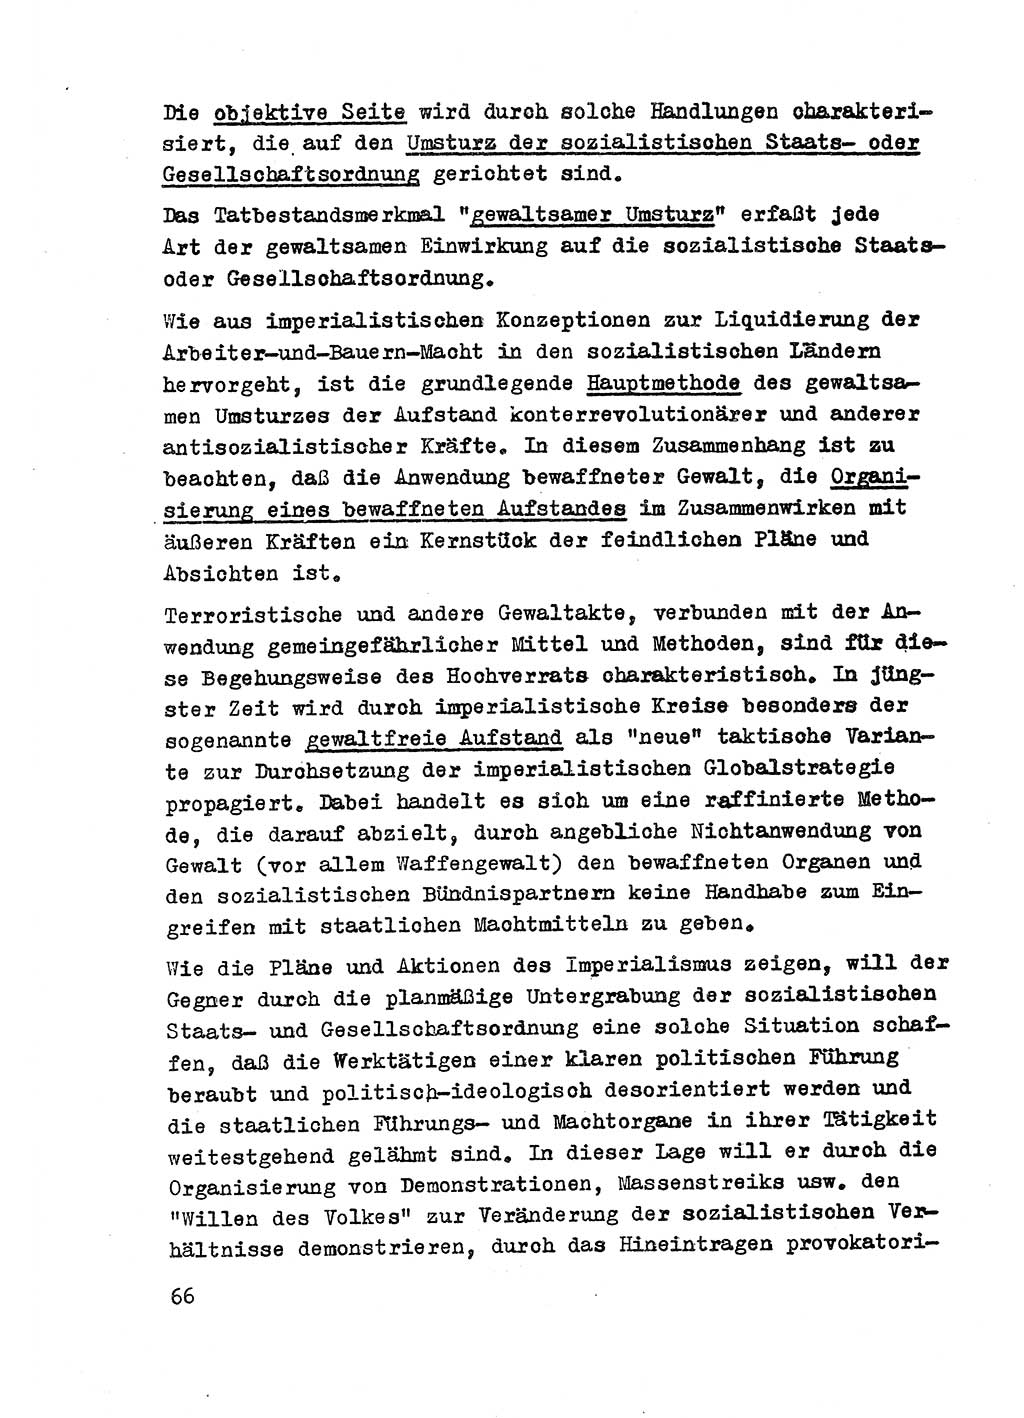 Strafrecht der DDR (Deutsche Demokratische Republik), Besonderer Teil, Lehrmaterial, Heft 2 1969, Seite 66 (Strafr. DDR BT Lehrmat. H. 2 1969, S. 66)